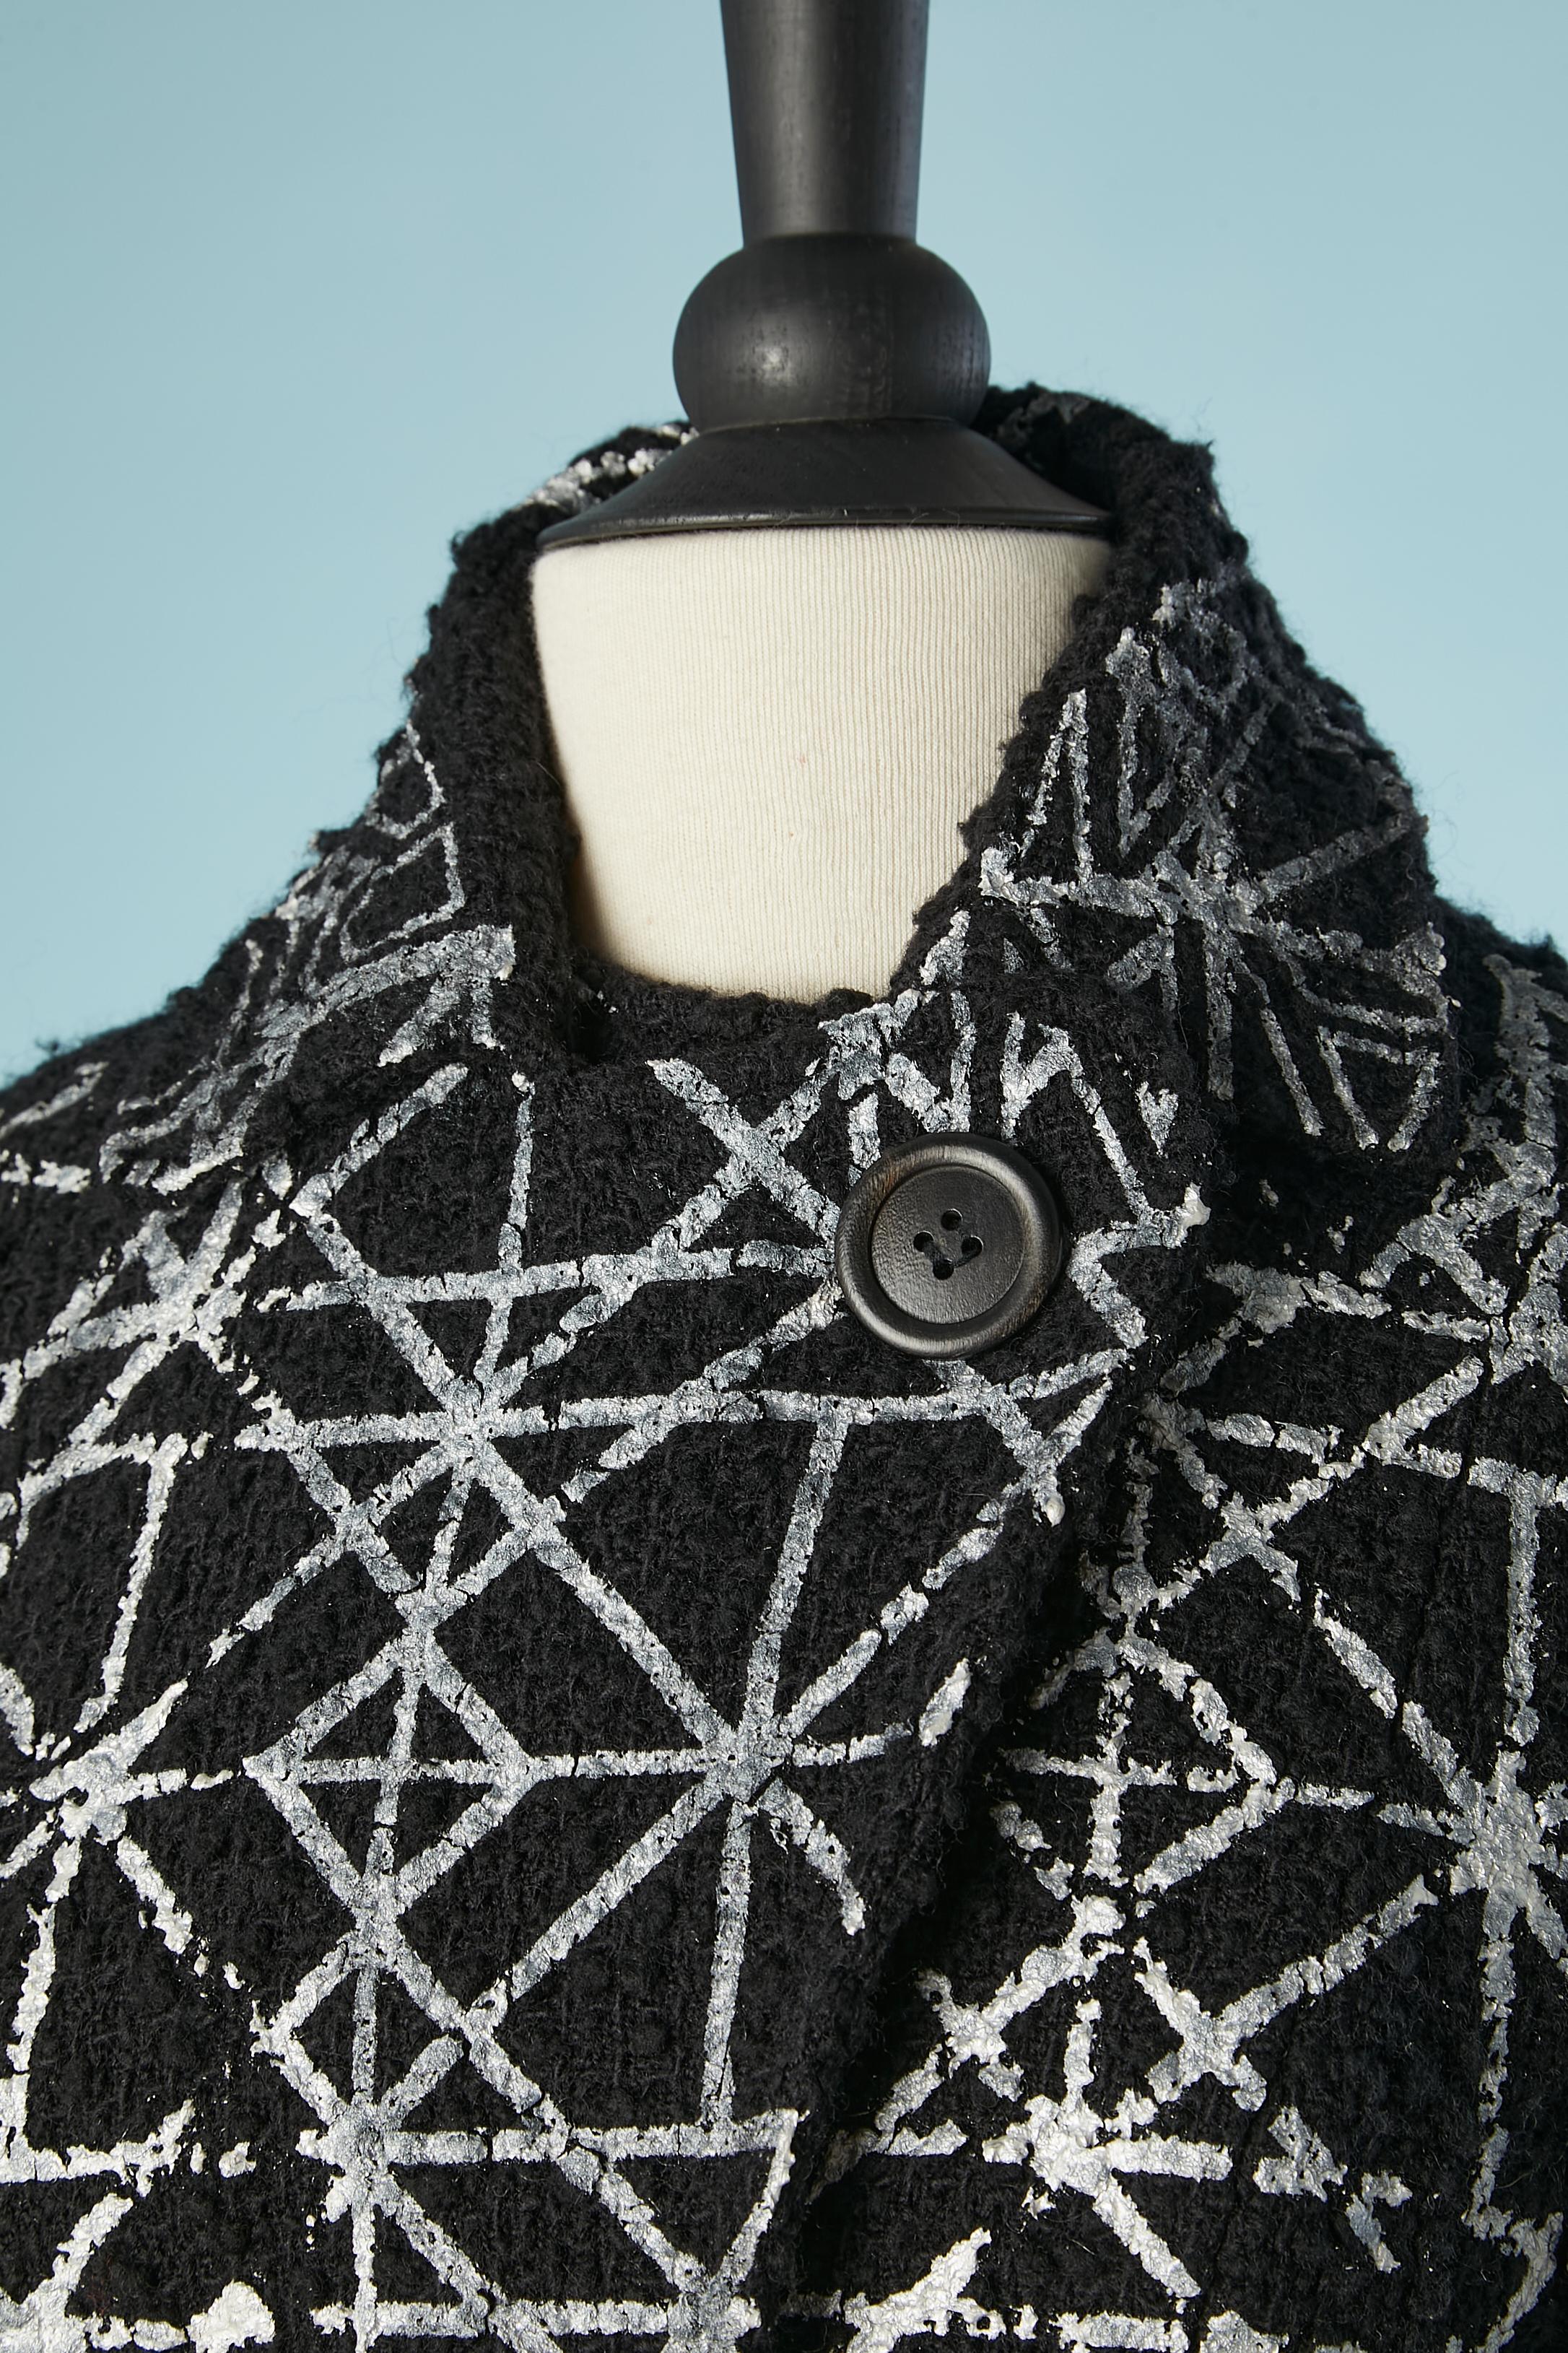 Veste à bouclette en laine noire avec motifs appliqués à la peinture argentée. Pas d'étiquette de composition du tissu. Doublure blanche probablement en polyester. Demi-courroie sur le devant. 